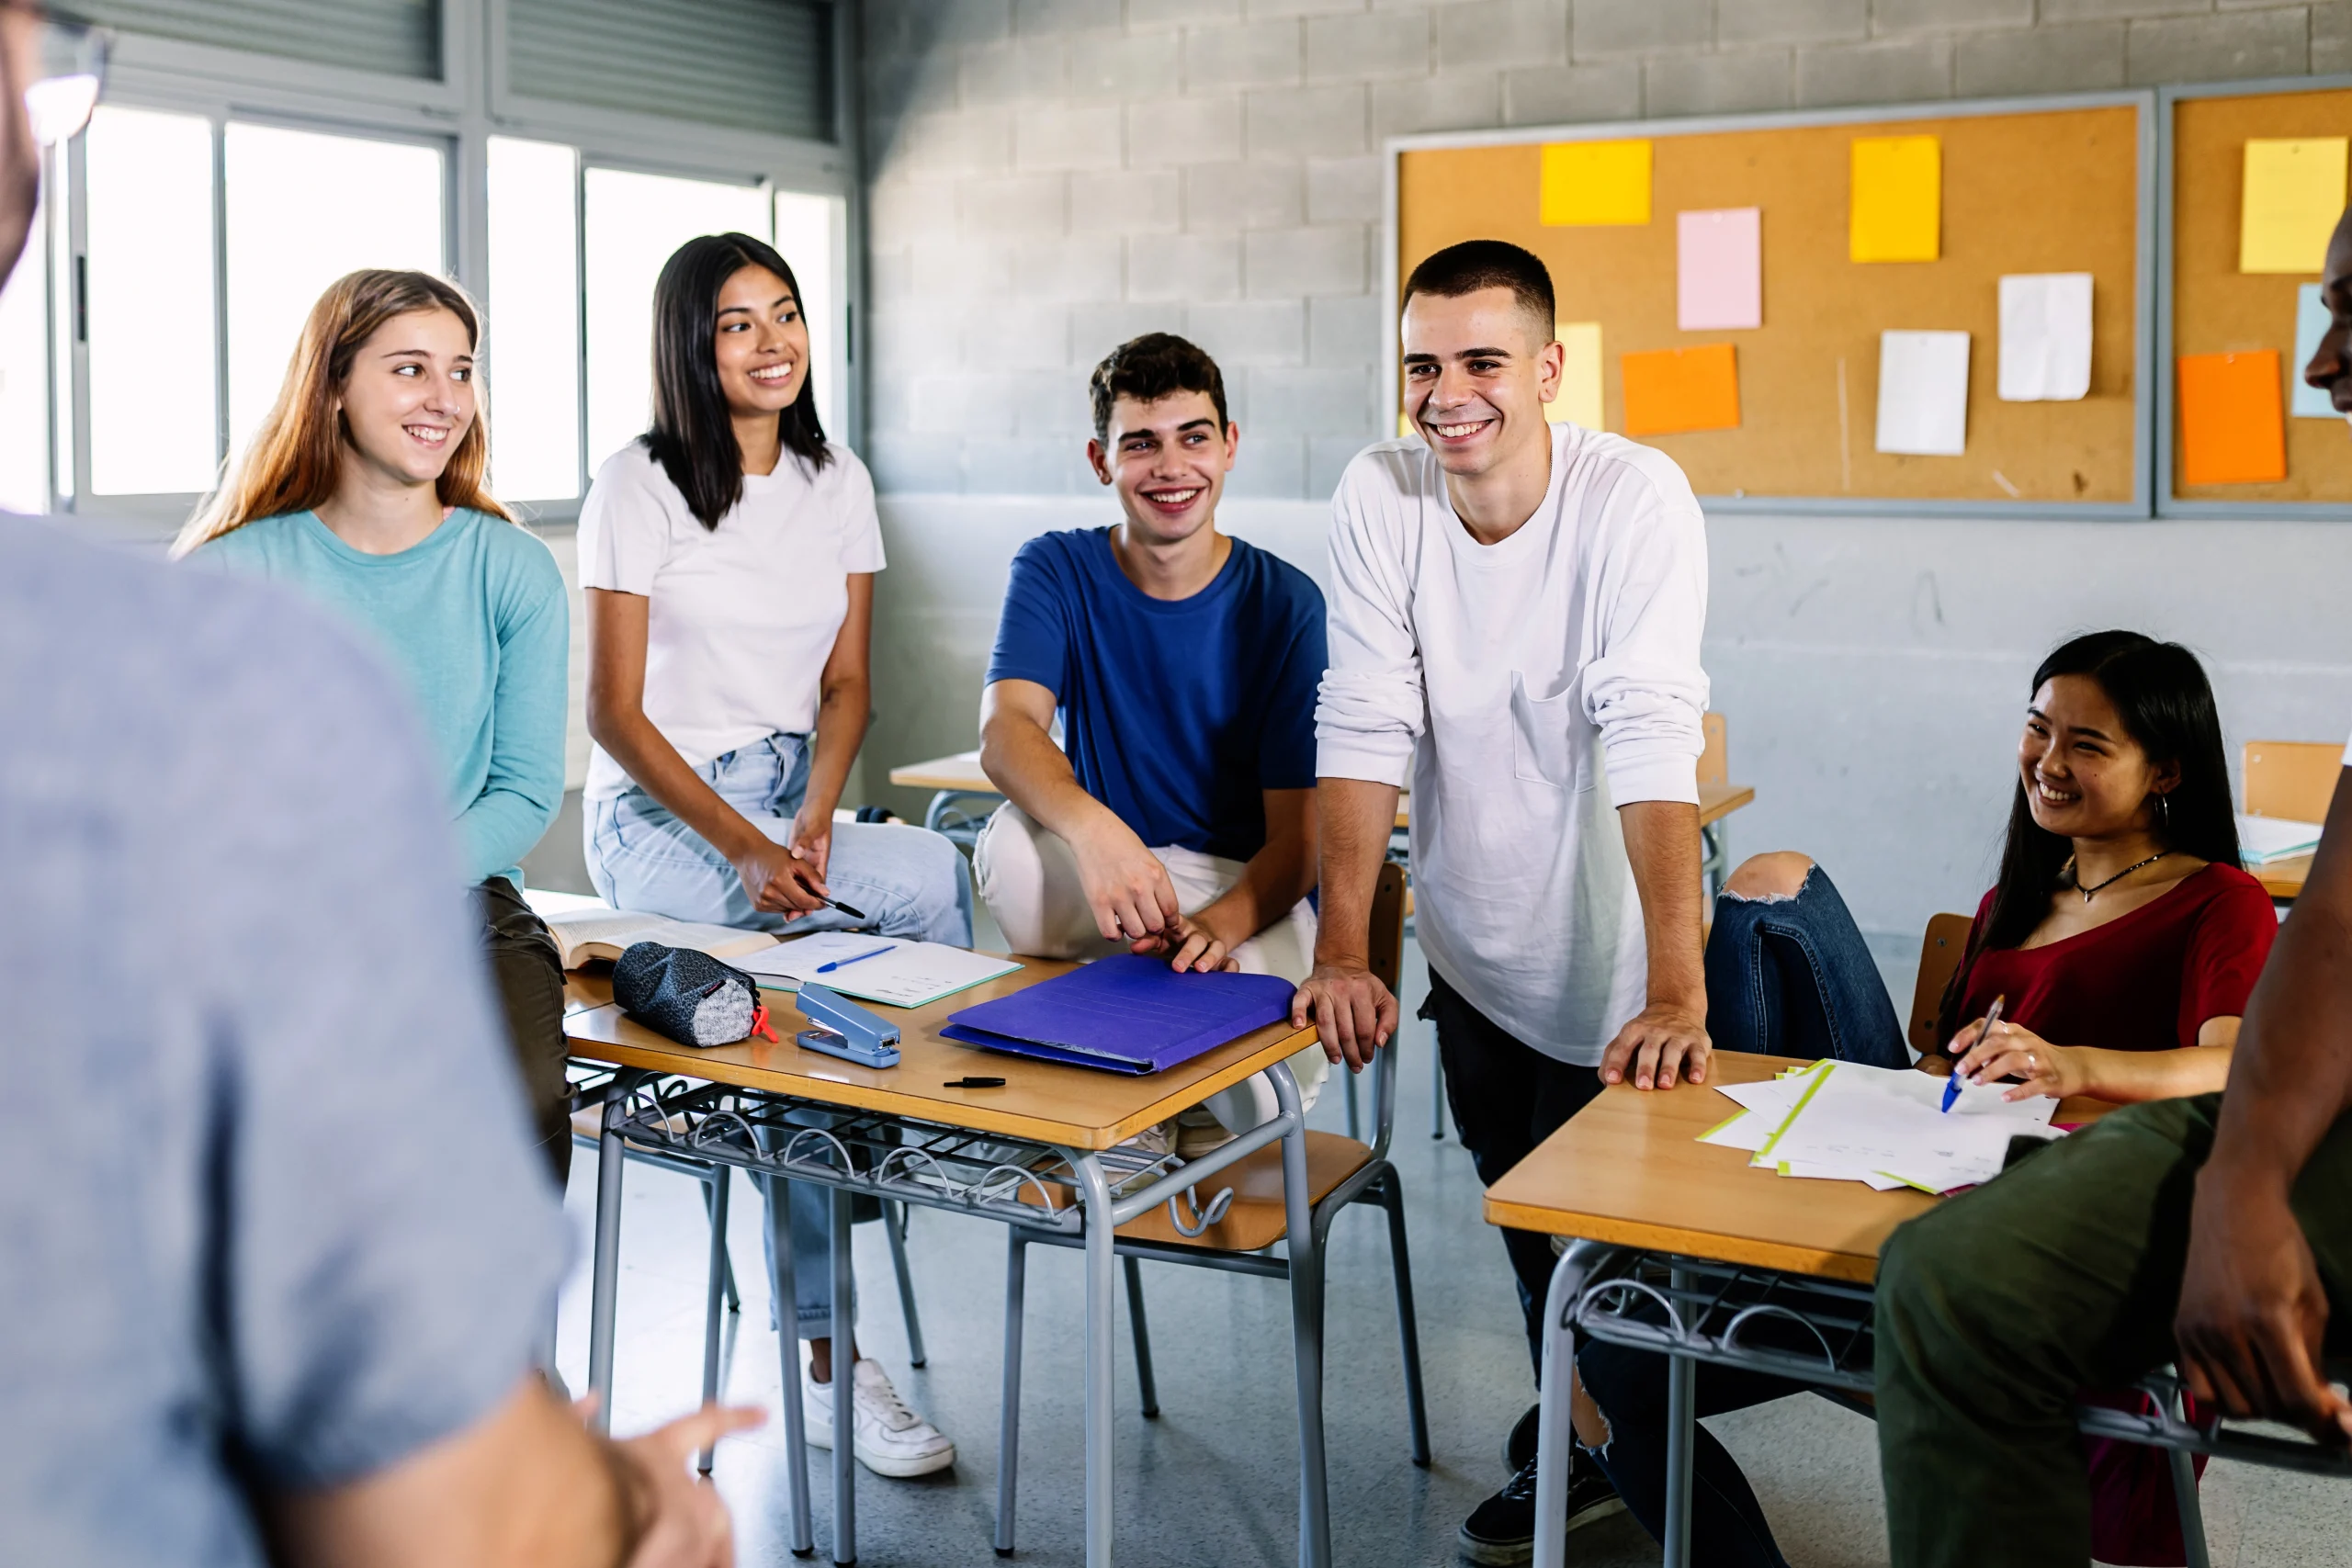 Professeur de sexe masculin et jeunes élèves adolescents discutant pendant une pause en classe